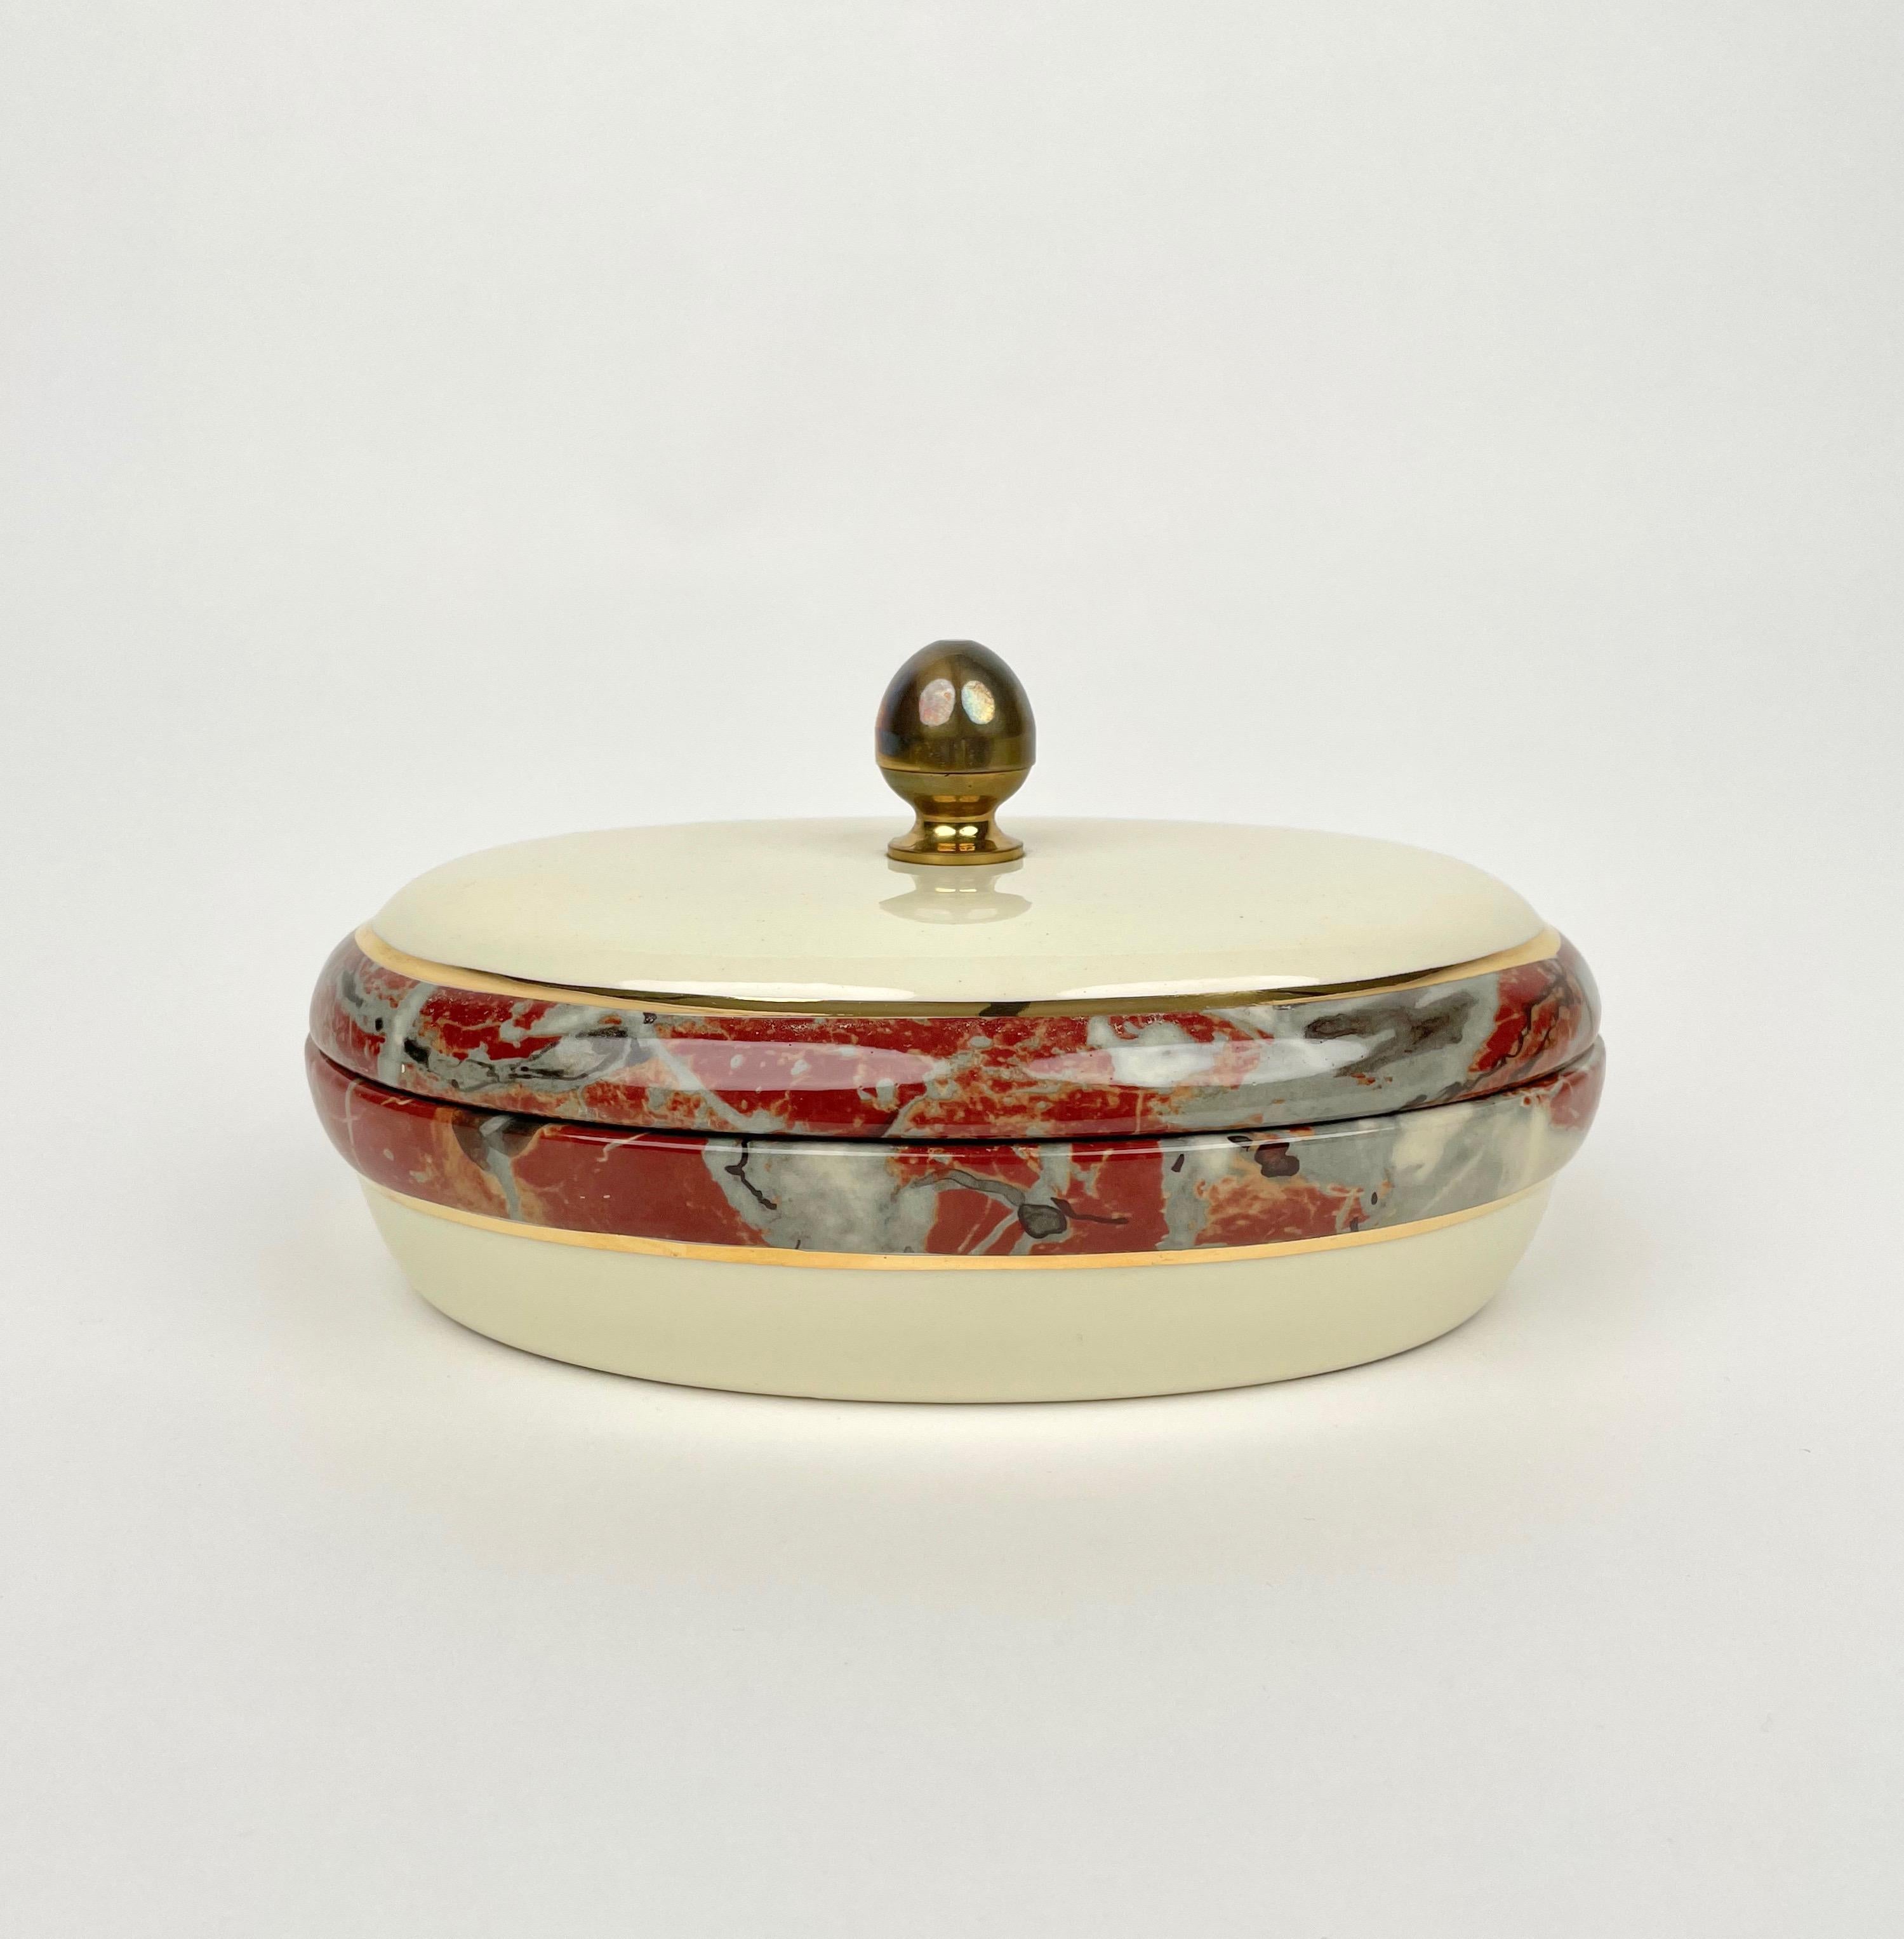 Boîte ovale en céramique avec bordures à effet marbre et poignée en laiton par Tommaso Barbi pour B Ceramiche fabriquée en Italie dans les années 1970. 

L'étiquette d'origine est encore fixée sur le fond, comme le montrent les photos.